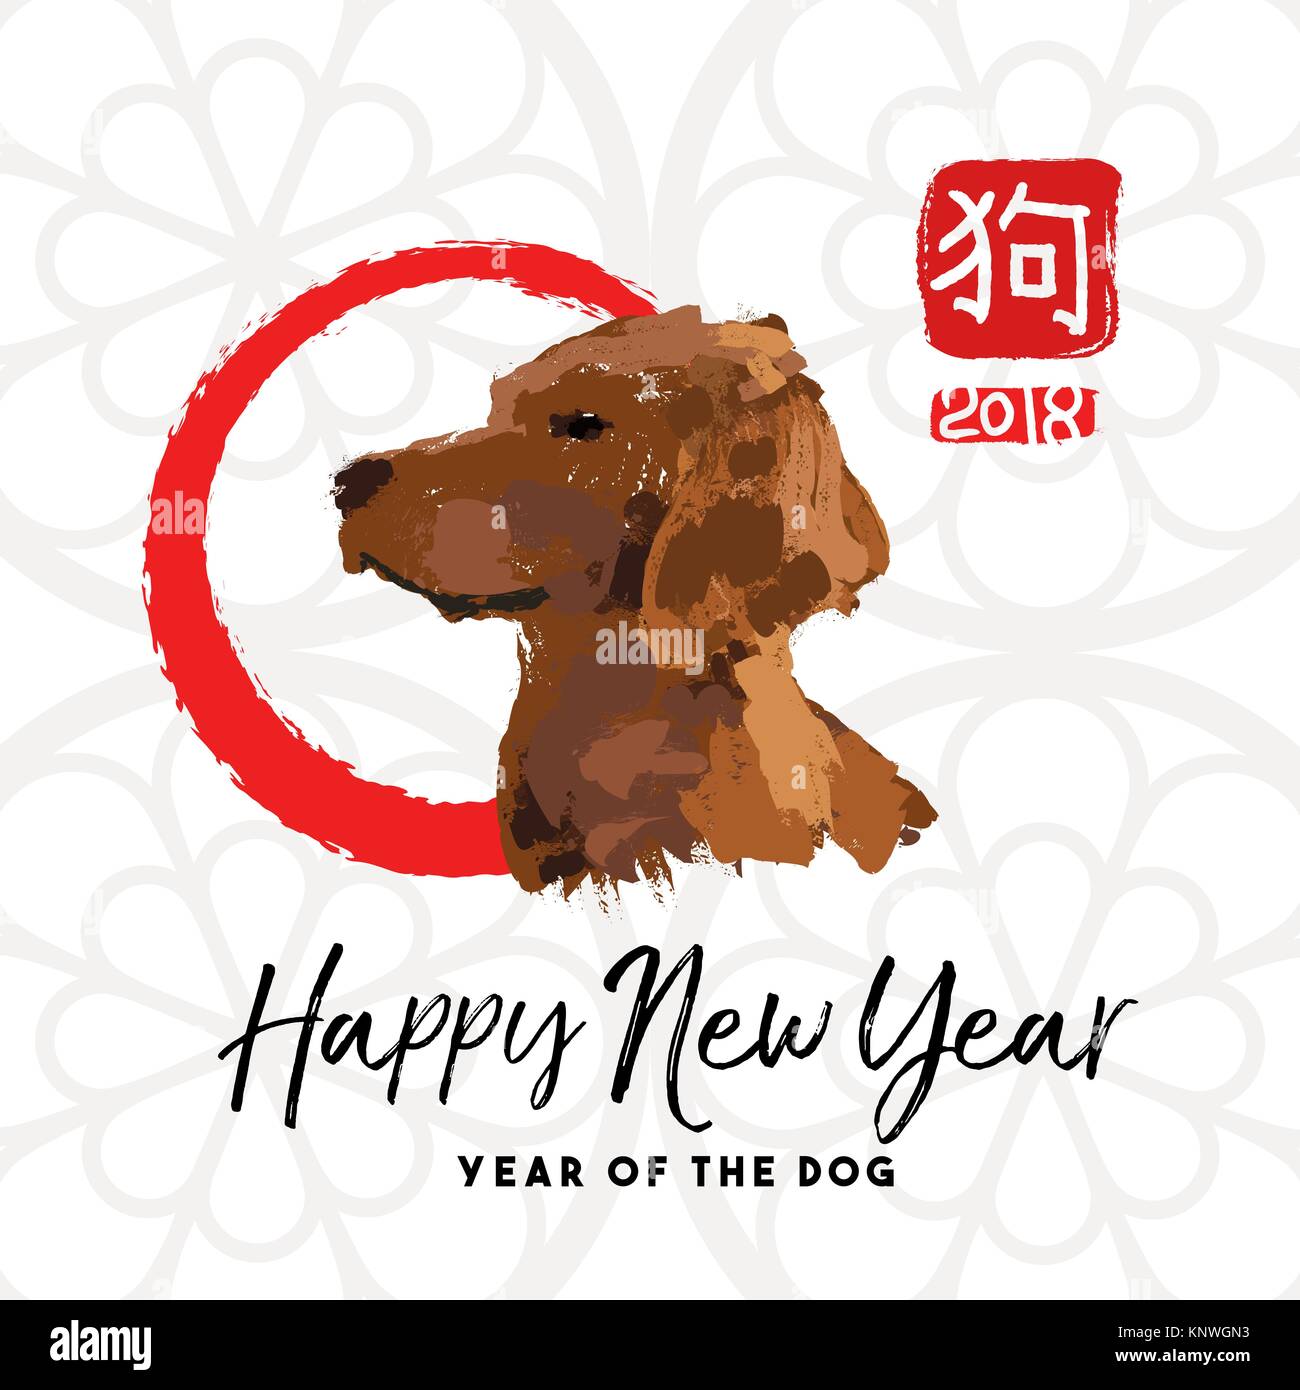 2018 Happy Chinese New Year Greeting Card Design mit Hand gezeichnete Tier Abbildung, zen Kreis und traditionellen Kalligraphie, dass Hund bedeutet. EPS 10 vec Stock Vektor